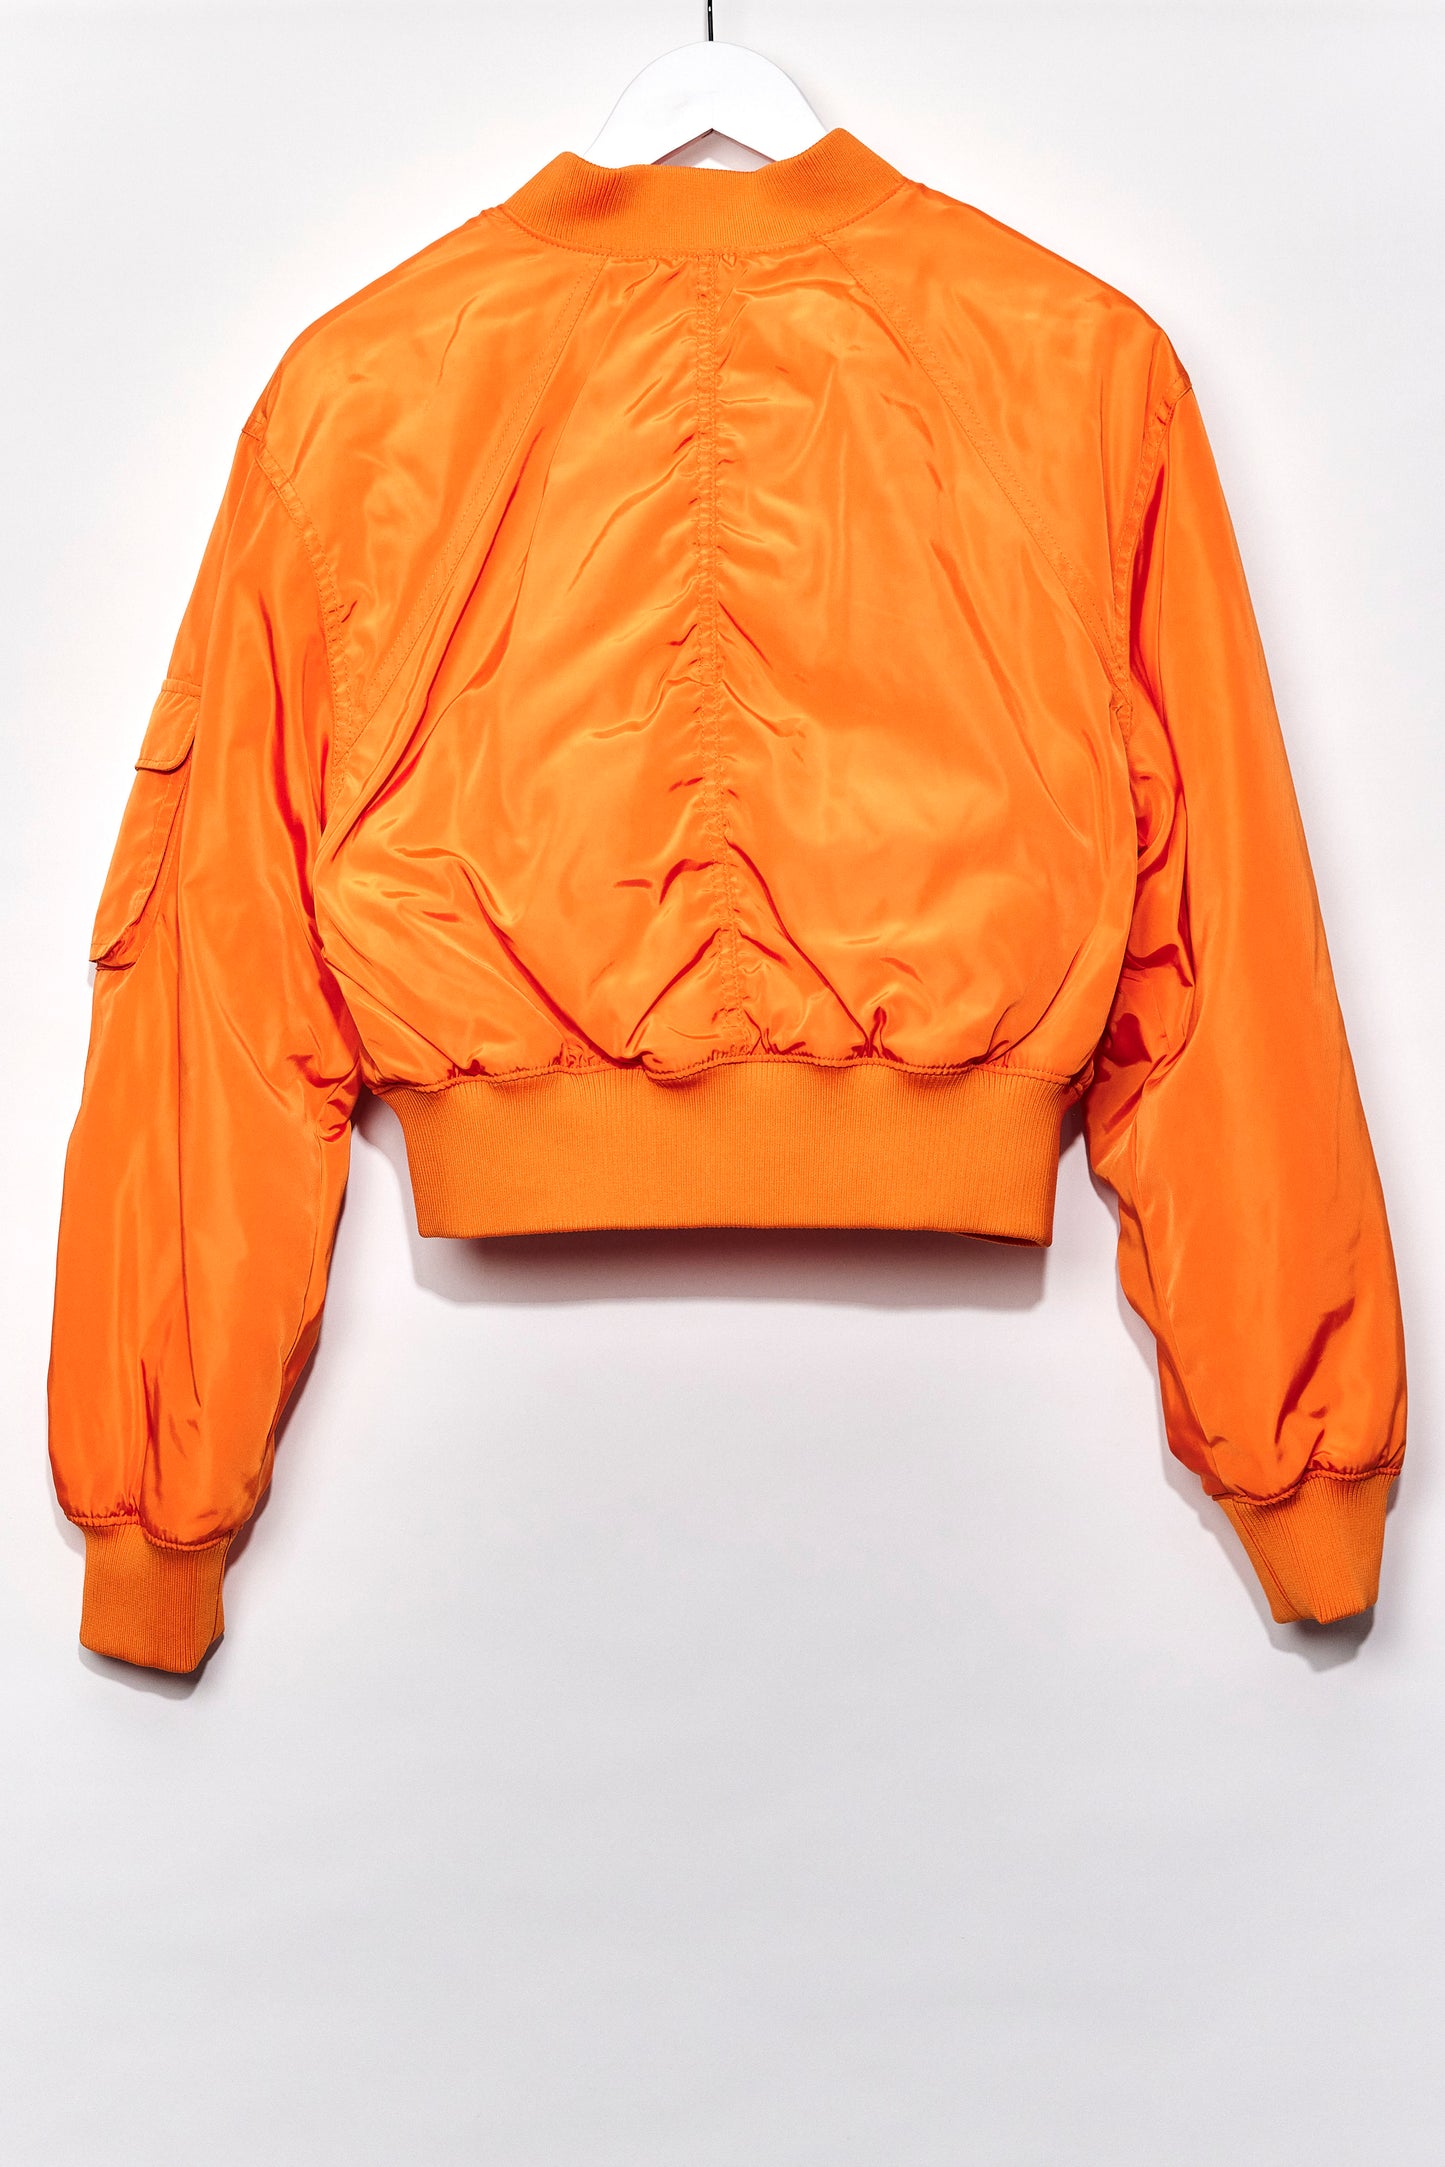 Womens H&M Orange bomber jacket size small